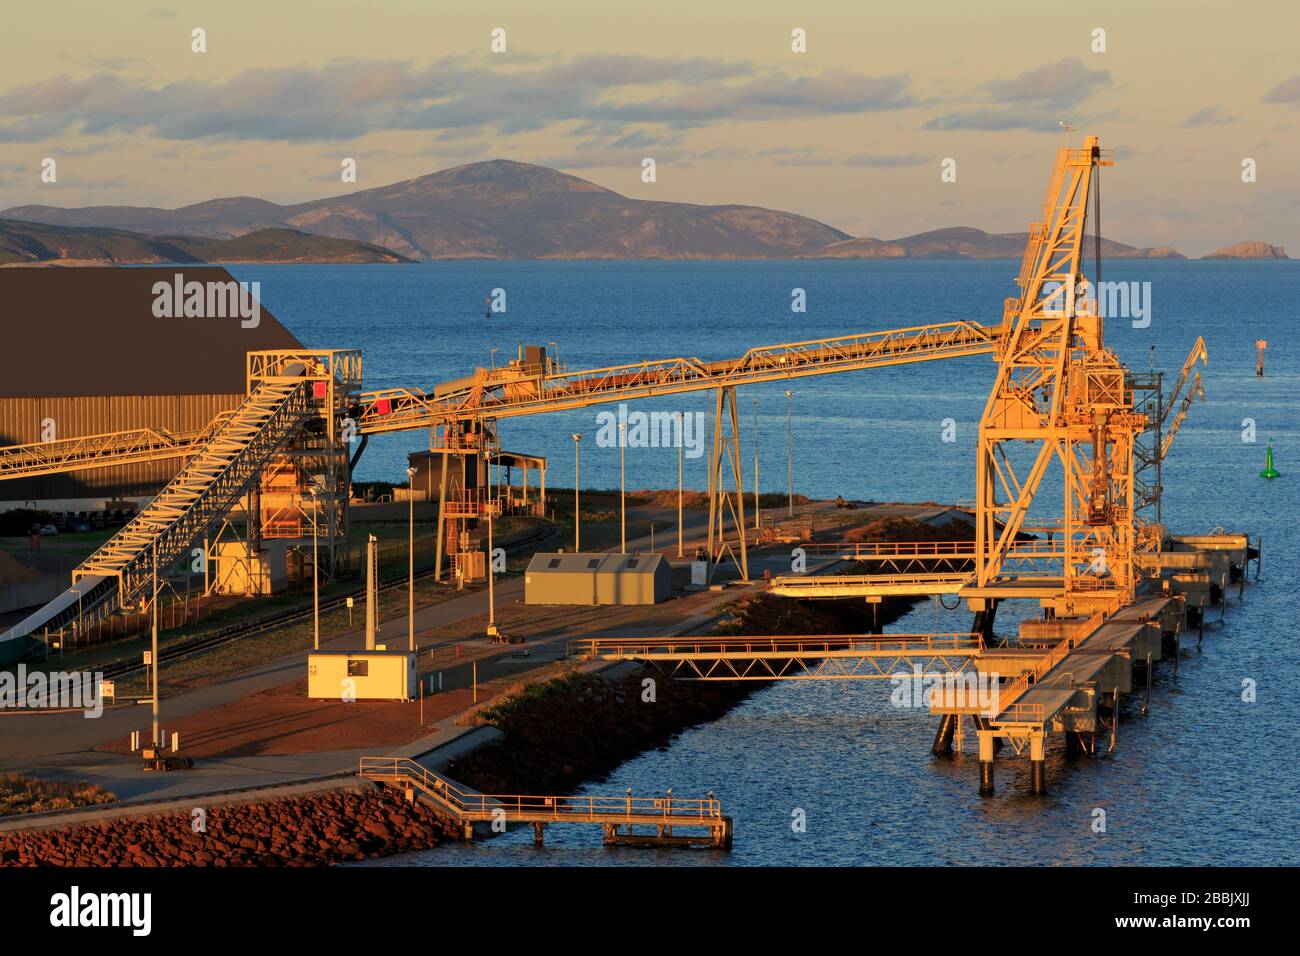 Wharf, Albany Port, Western Australia Stock Photo - Alamy